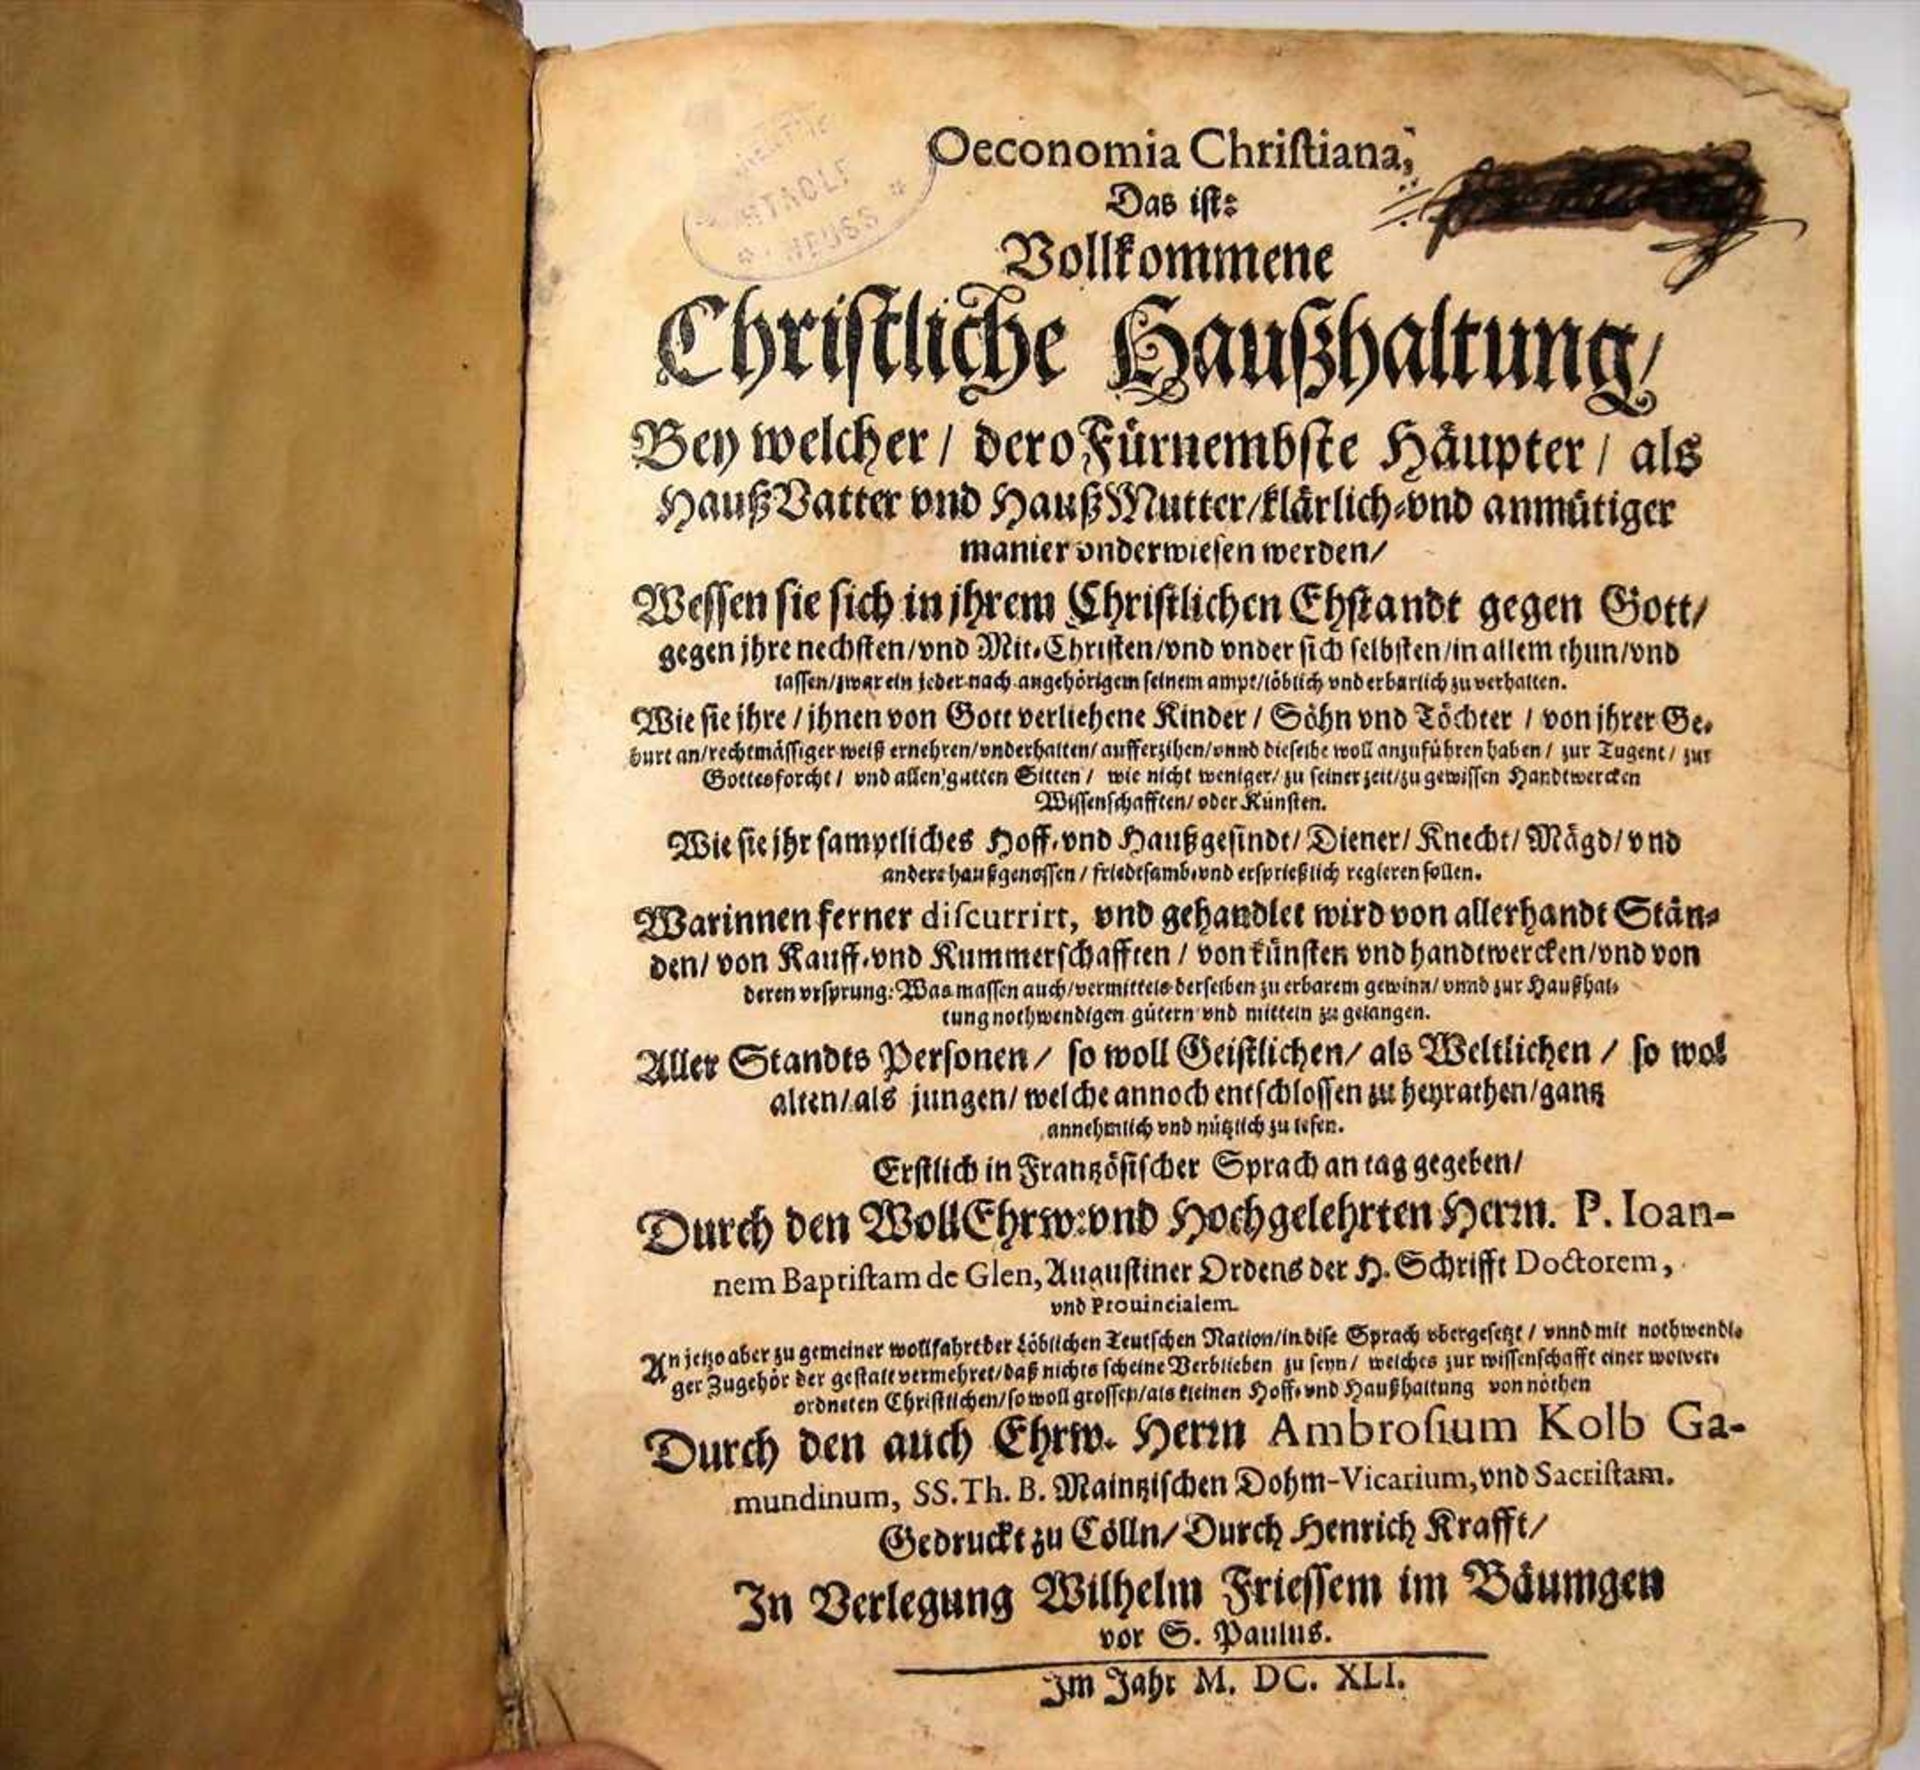 Bd., Christliche Haushaltung, Wilhelm Friessem in Bäumgen, 1641, Pergamenteinband, 21 x 16 x 6 cm. - Image 2 of 3